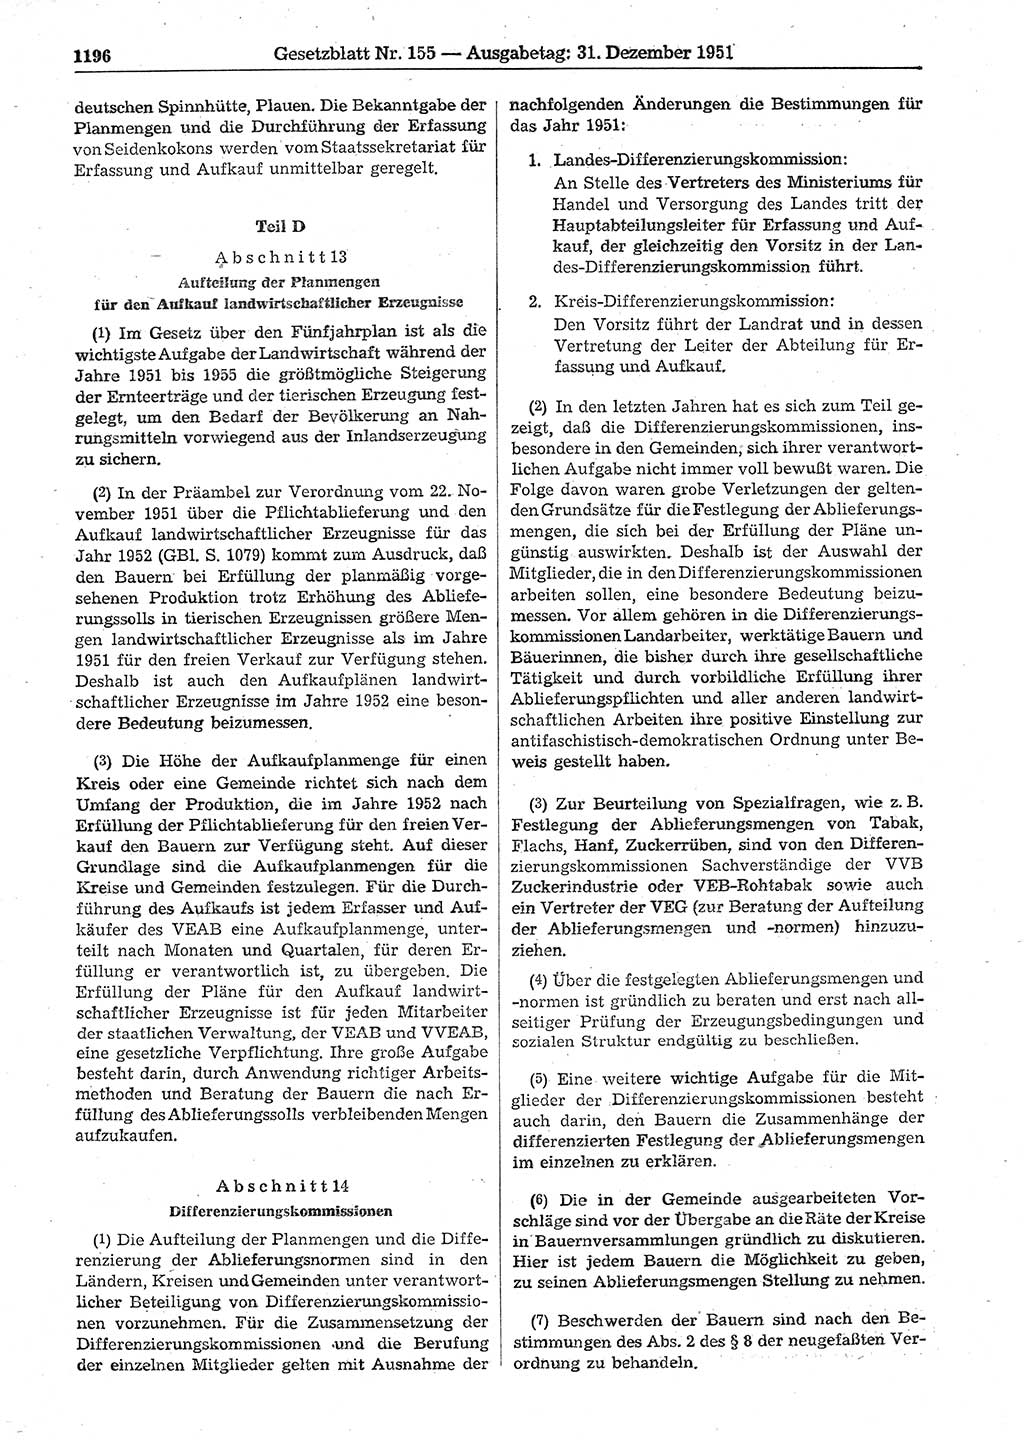 Gesetzblatt (GBl.) der Deutschen Demokratischen Republik (DDR) 1951, Seite 1196 (GBl. DDR 1951, S. 1196)